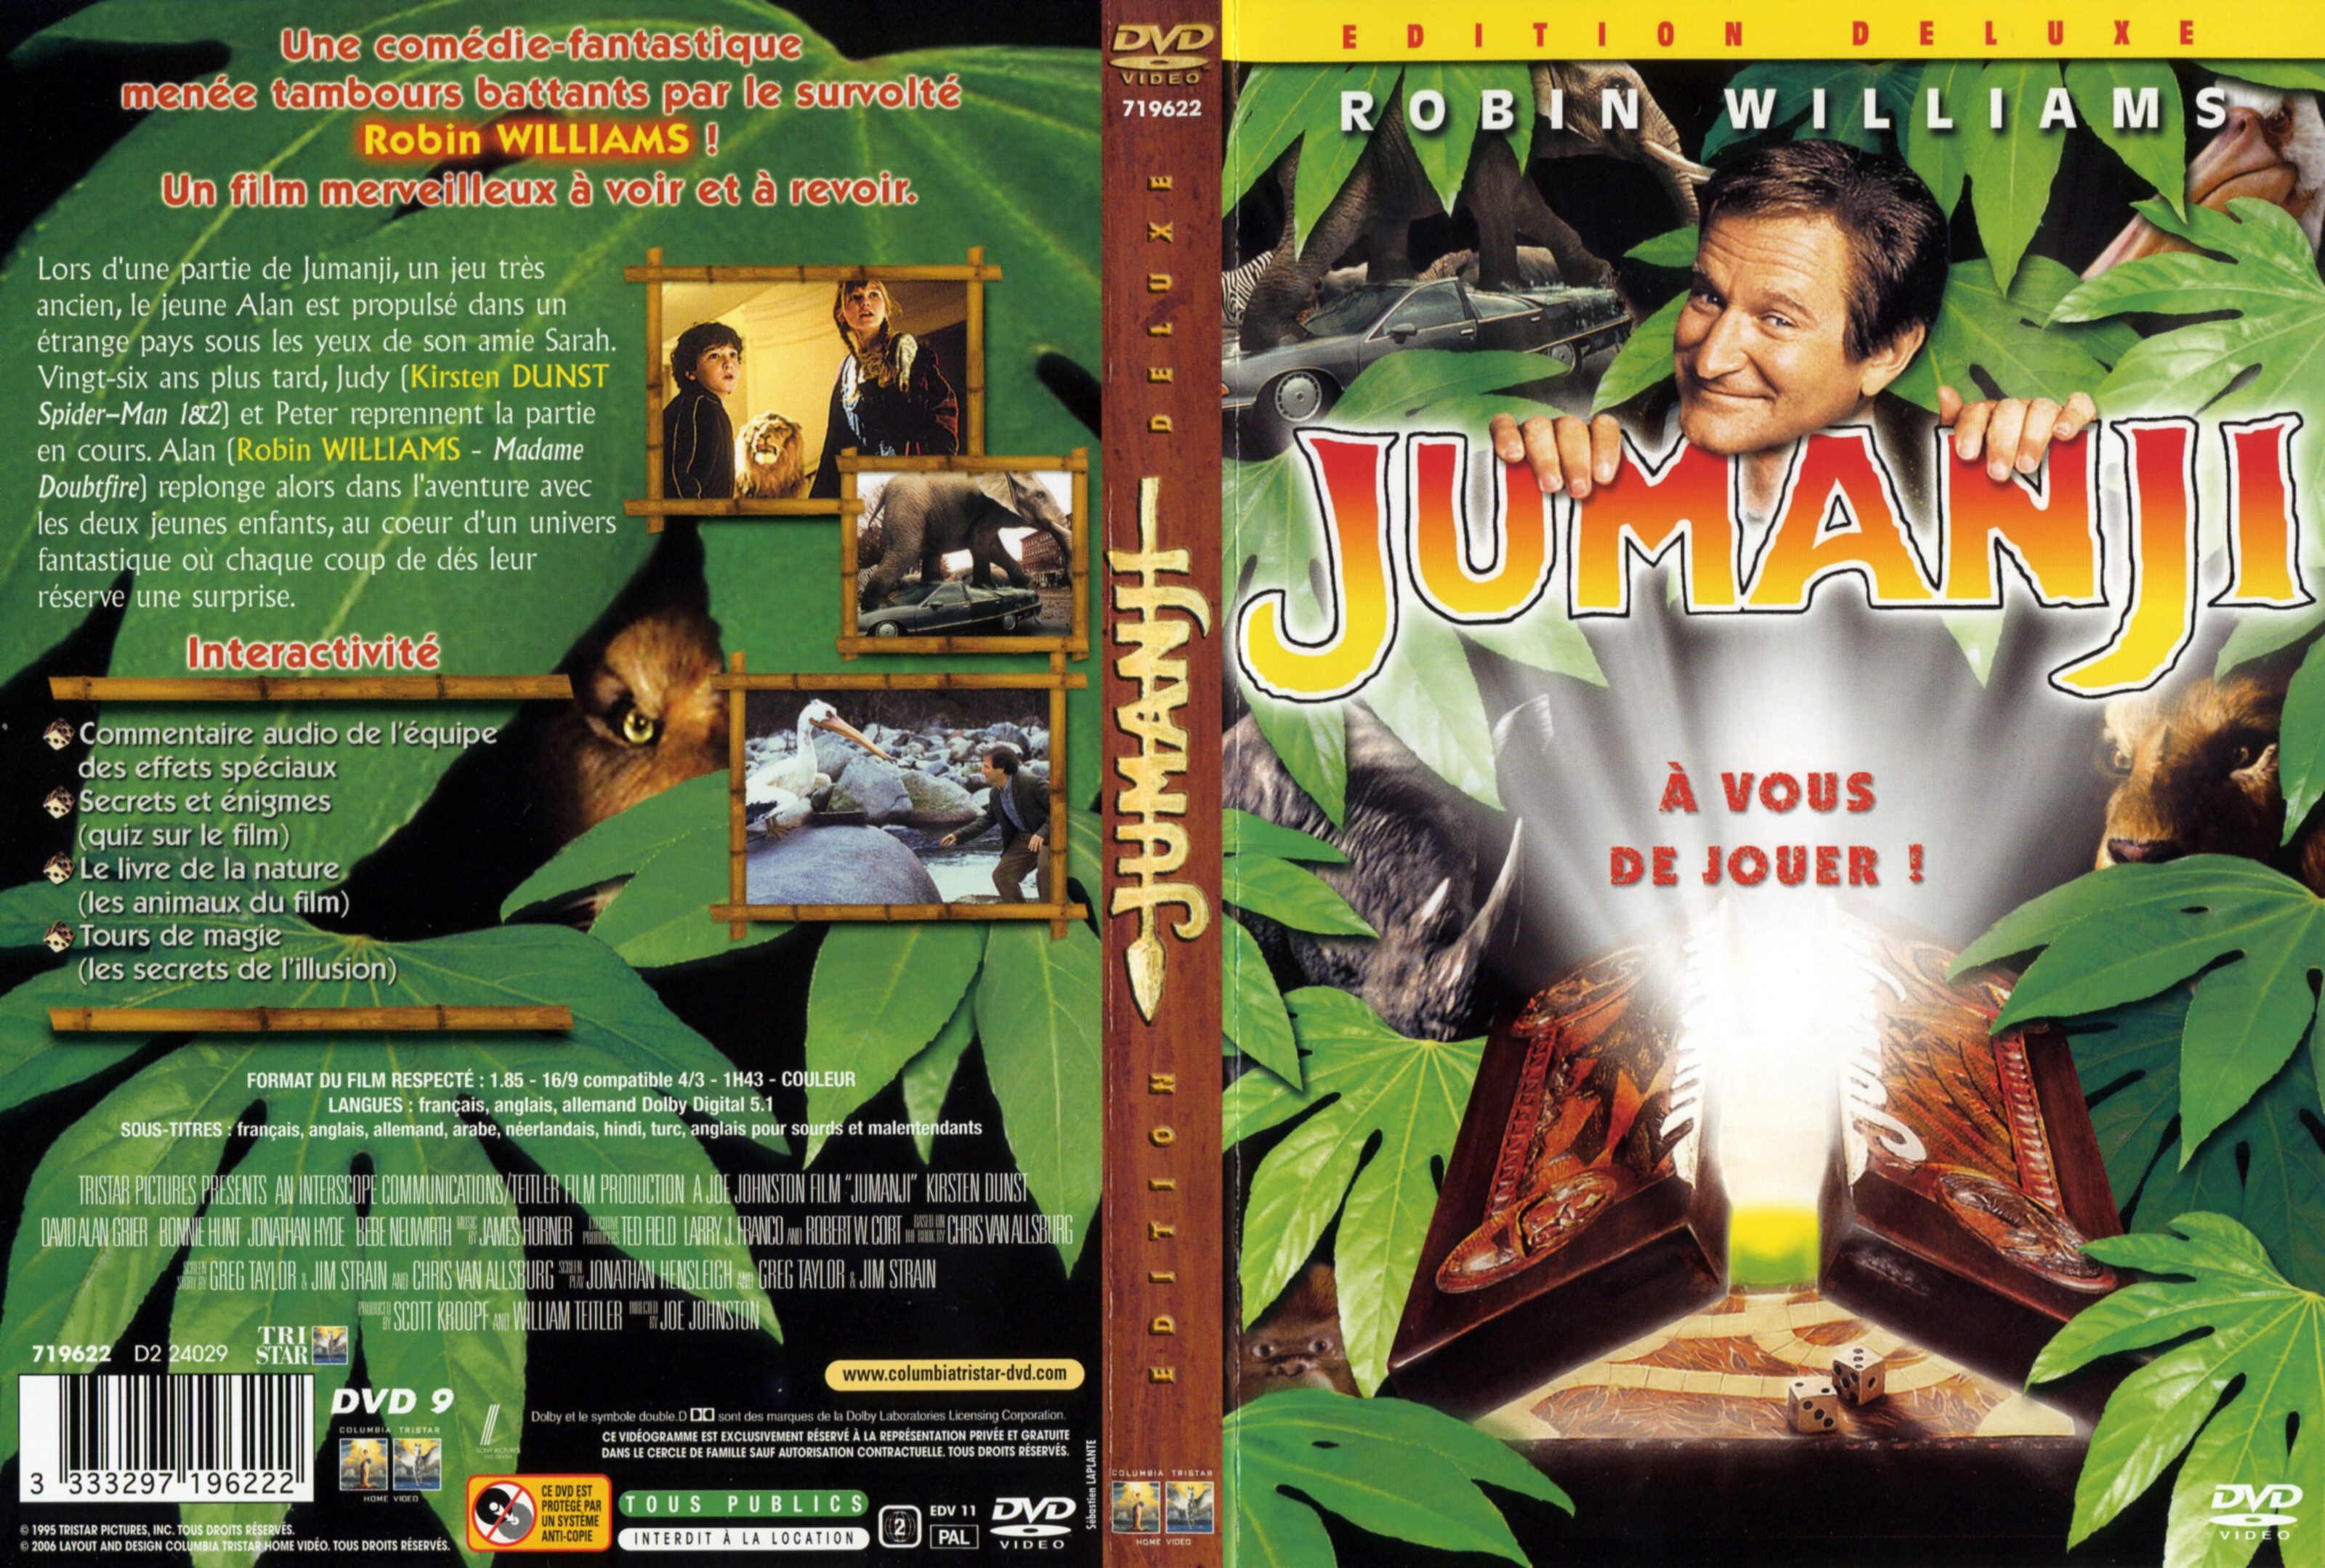 Jaquette DVD Jumanji v4